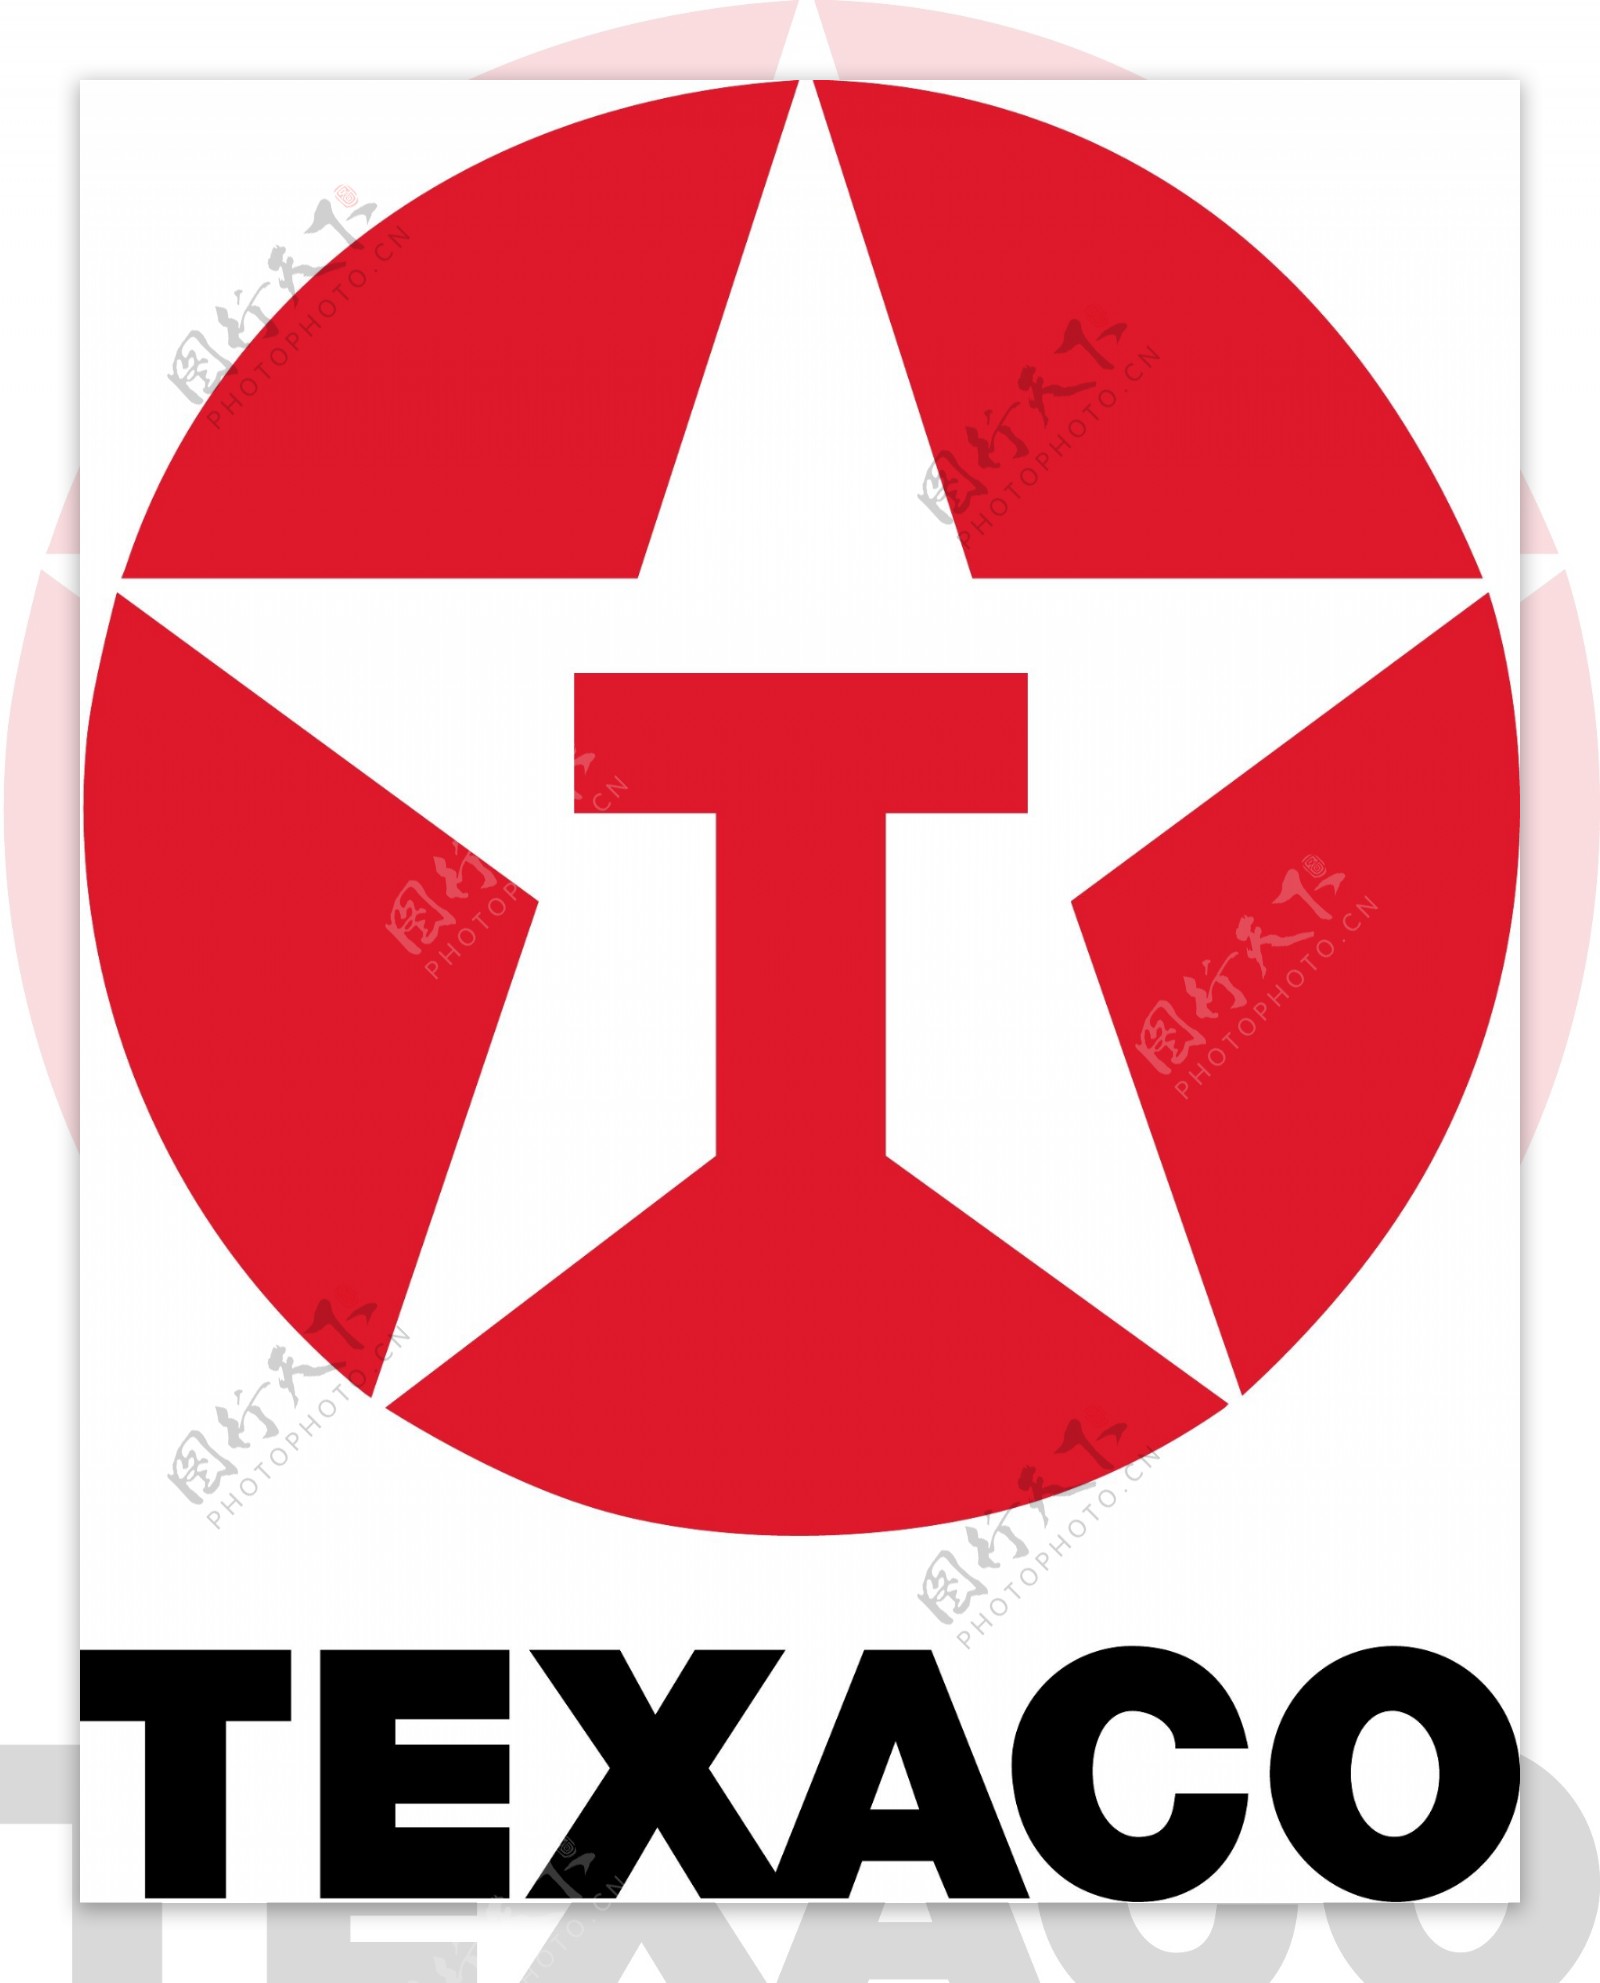 德士古logo2